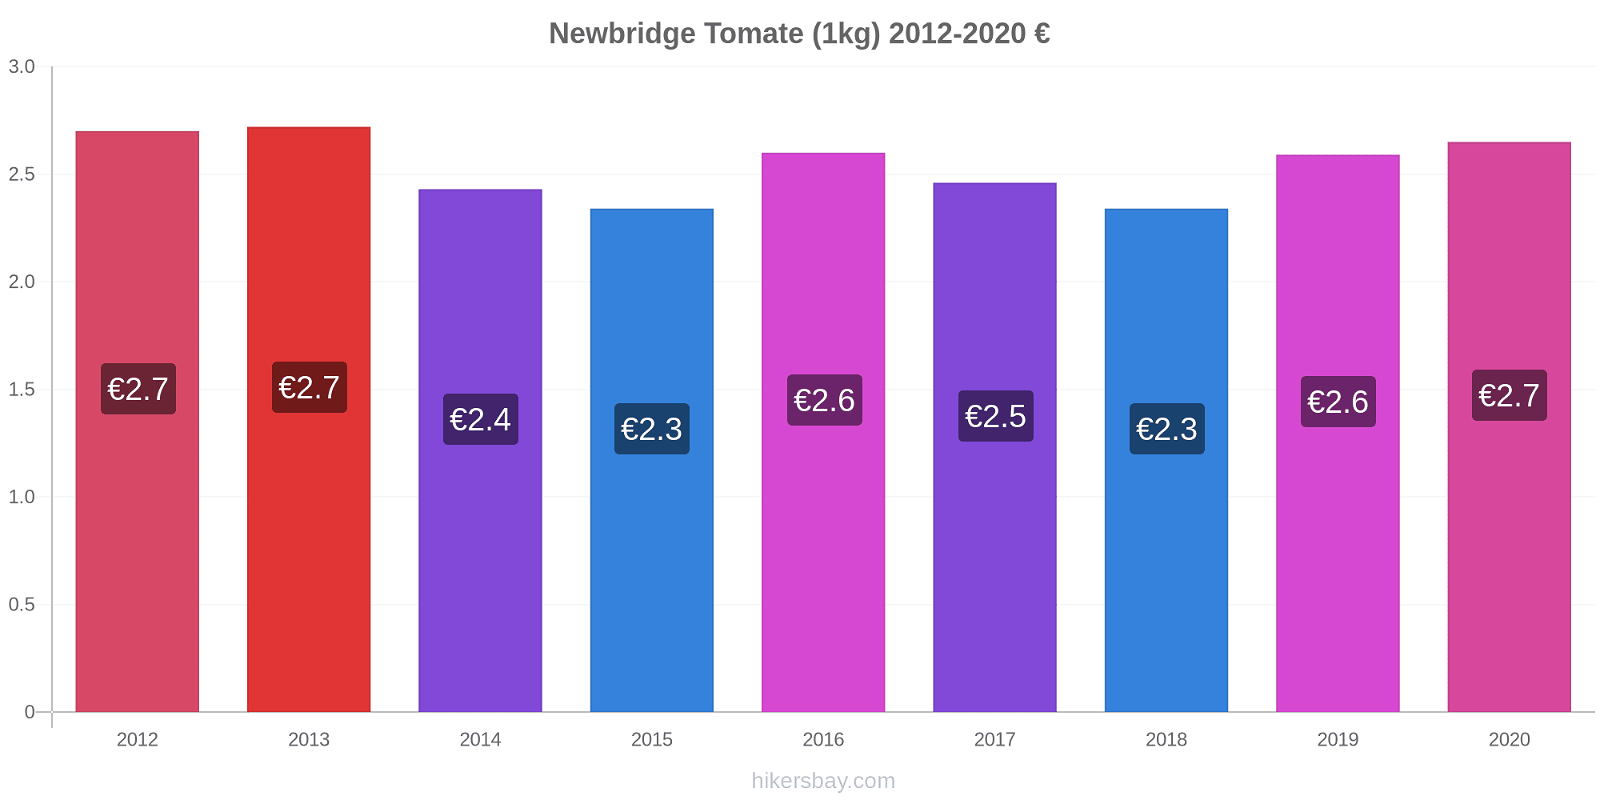 Newbridge changements de prix Tomate (1kg) hikersbay.com